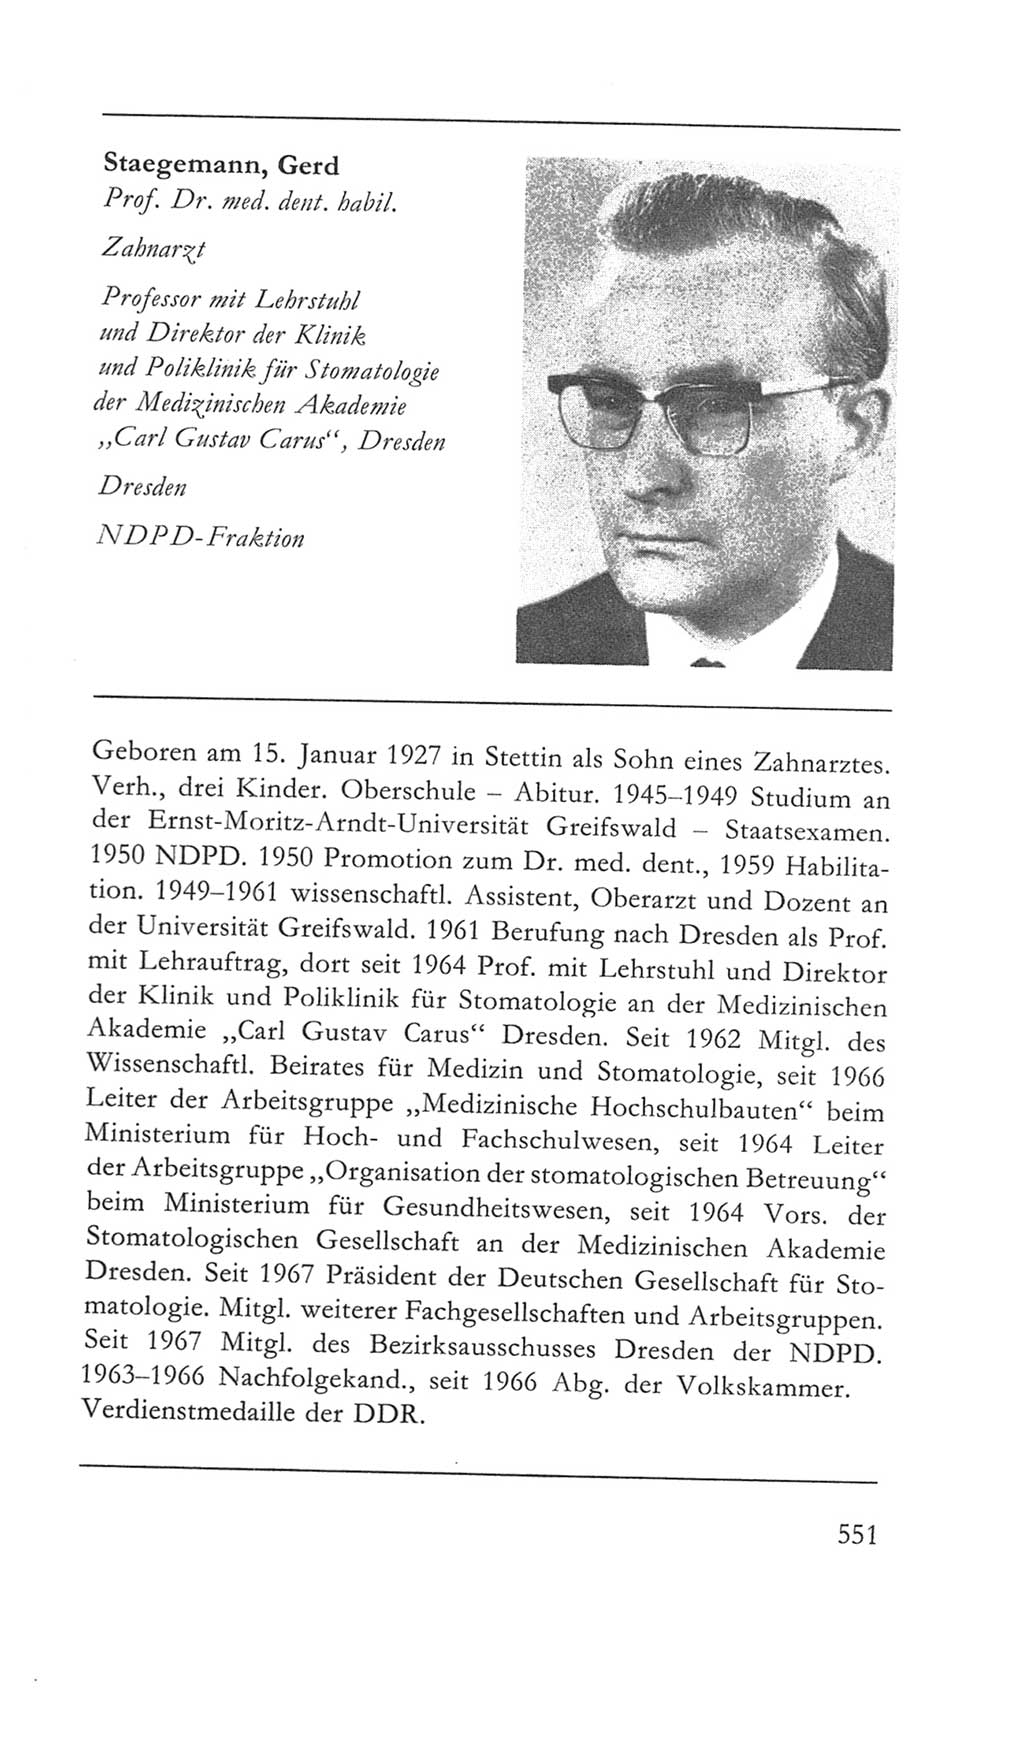 Volkskammer (VK) der Deutschen Demokratischen Republik (DDR) 5. Wahlperiode 1967-1971, Seite 551 (VK. DDR 5. WP. 1967-1971, S. 551)